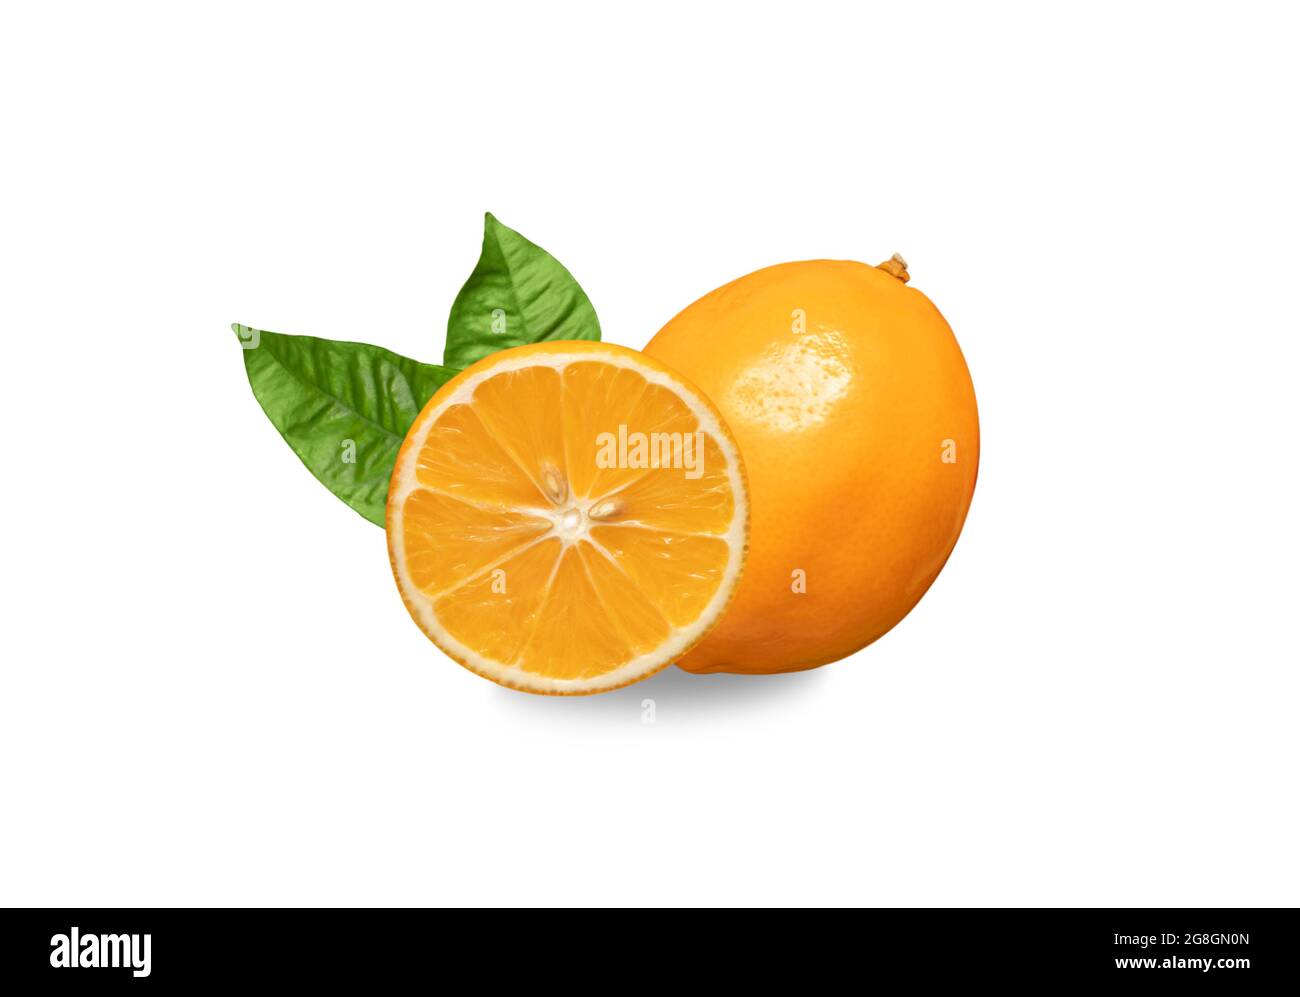 Agrumi arancio isolato su sfondo bianco. Limone d'arancia meyeri agli agrumi. Frutta succosa con foglie di chiodo di garofano. Foto Stock